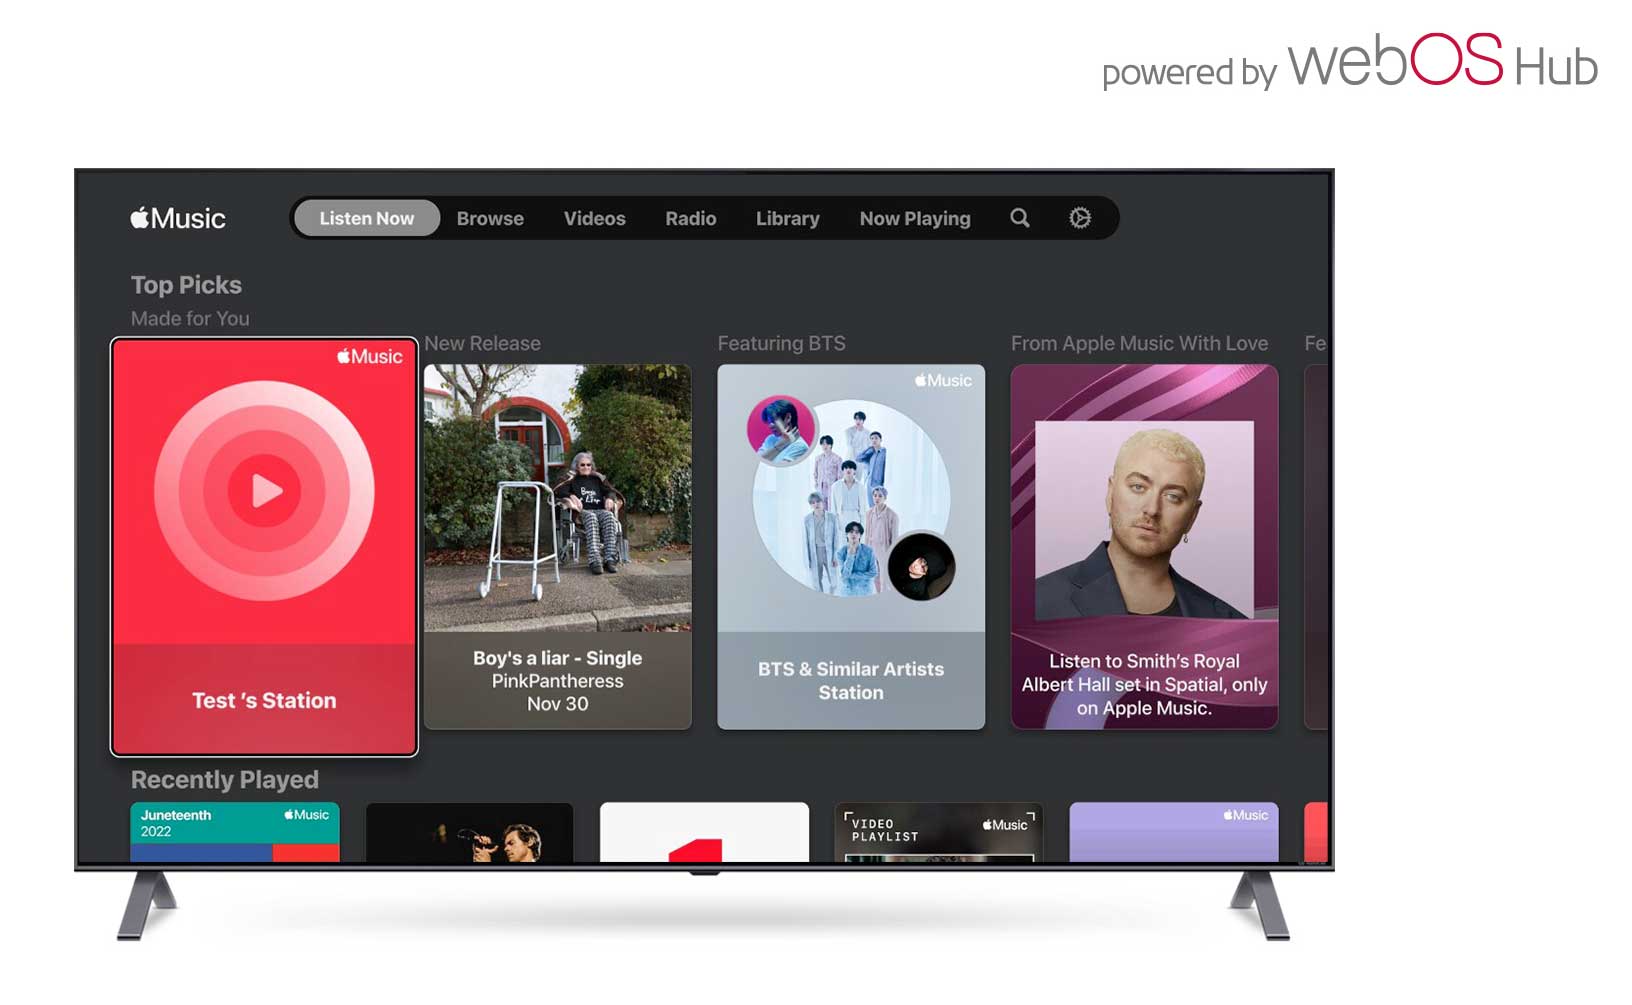 LG estende la compatibilità con i servizi Apple per l’ecosistema webOS Hub